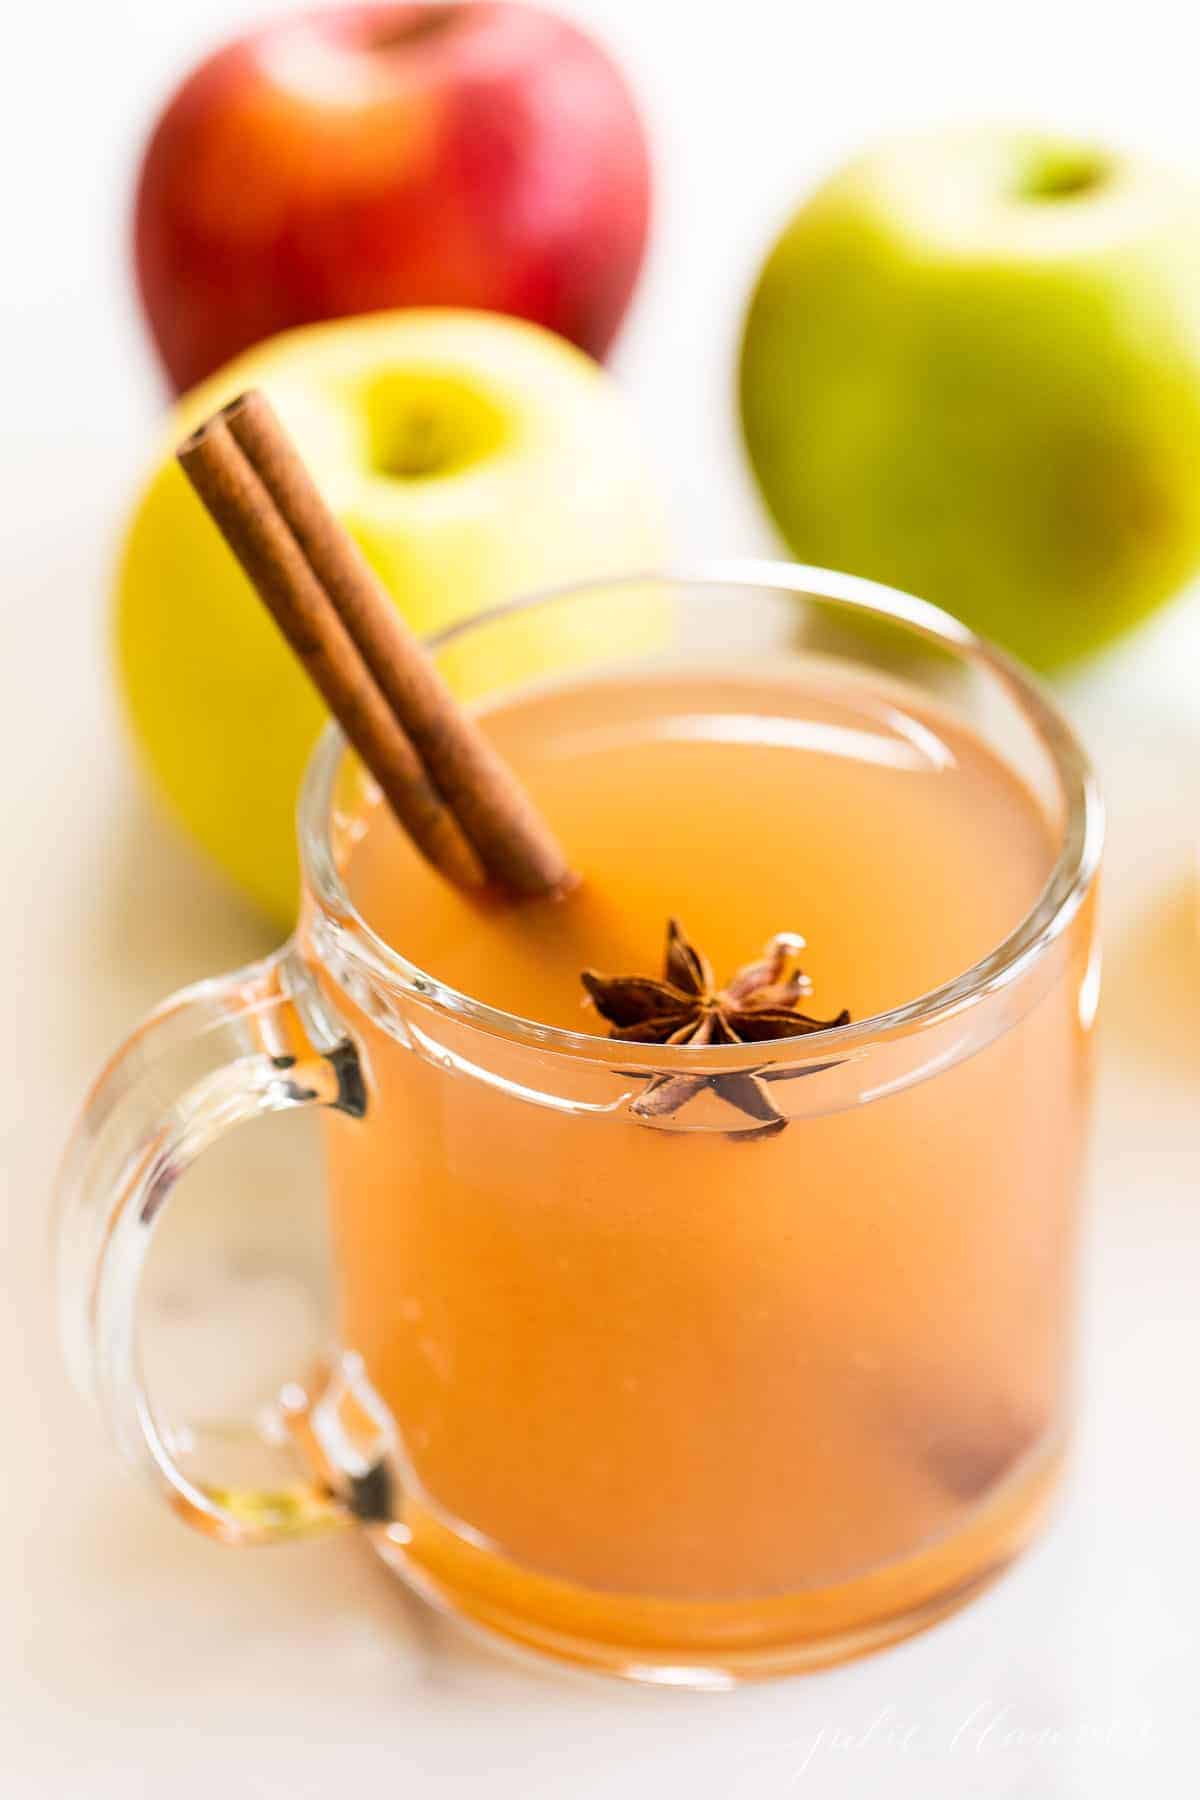 透明的玻璃杯，充满了温暖的苹果酒，进行虚拟的感恩节庆祝活动。